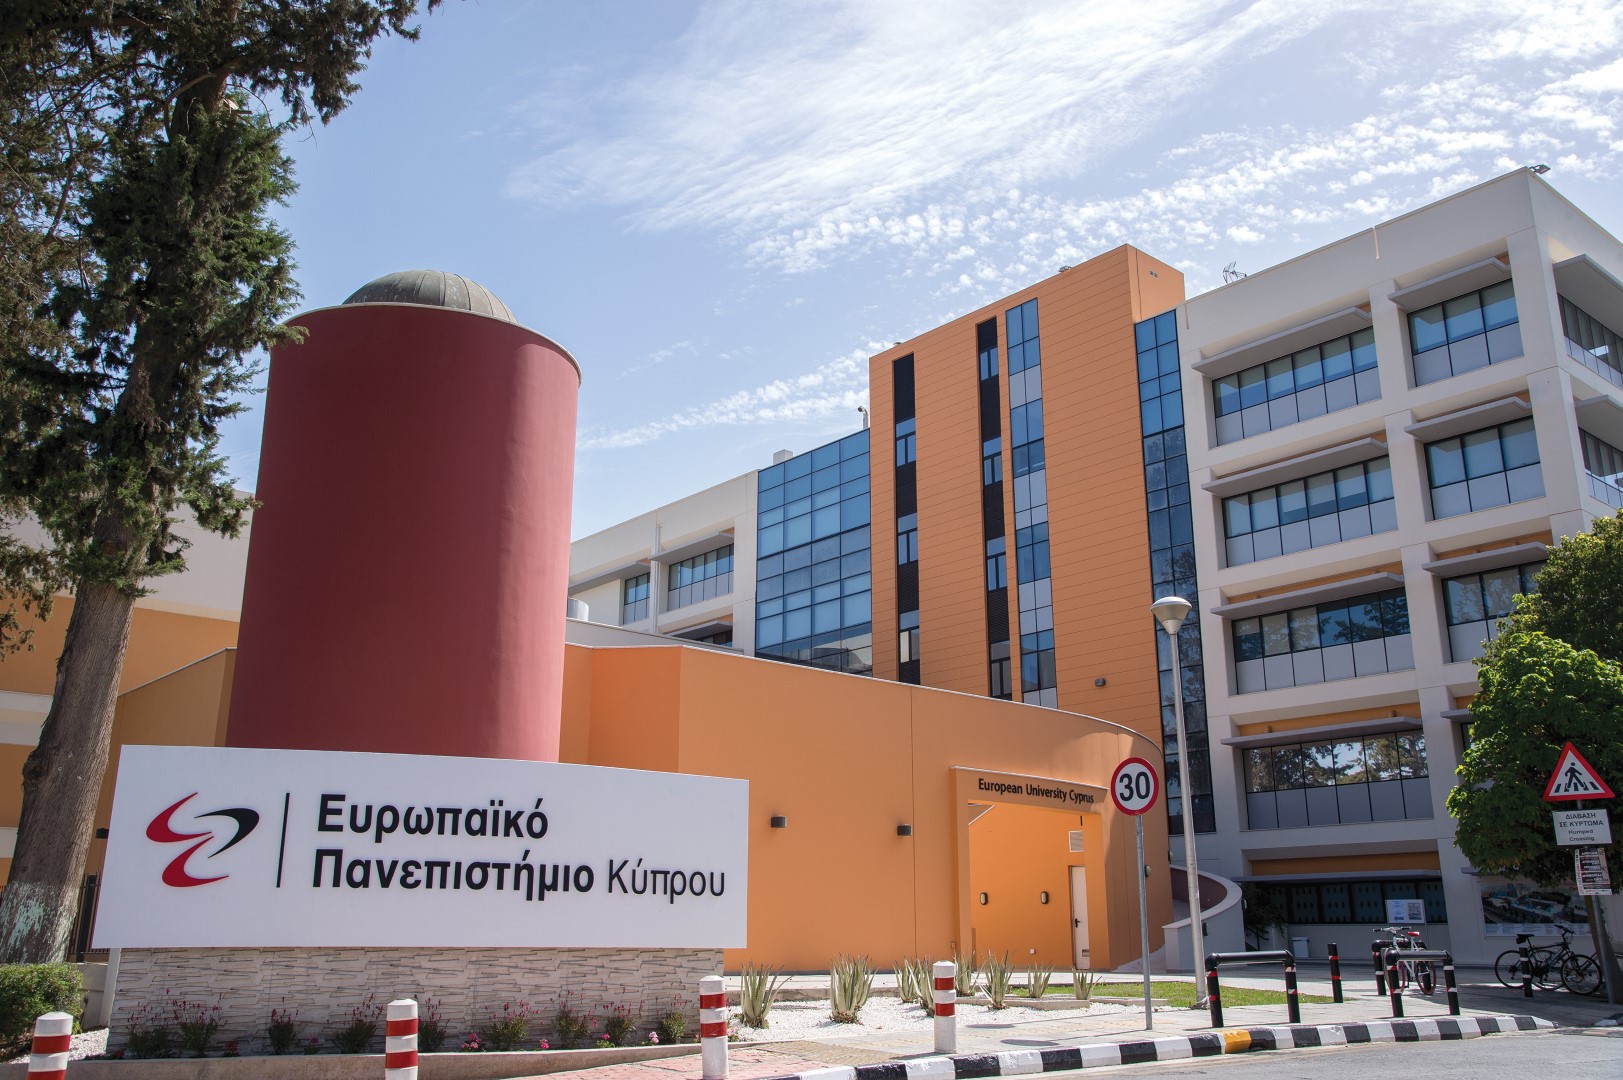 Εκδήλωση Παρουσίασης του Ευρωπαϊκού Πανεπιστημίου Κύπρου στην Θεσσαλονίκη 